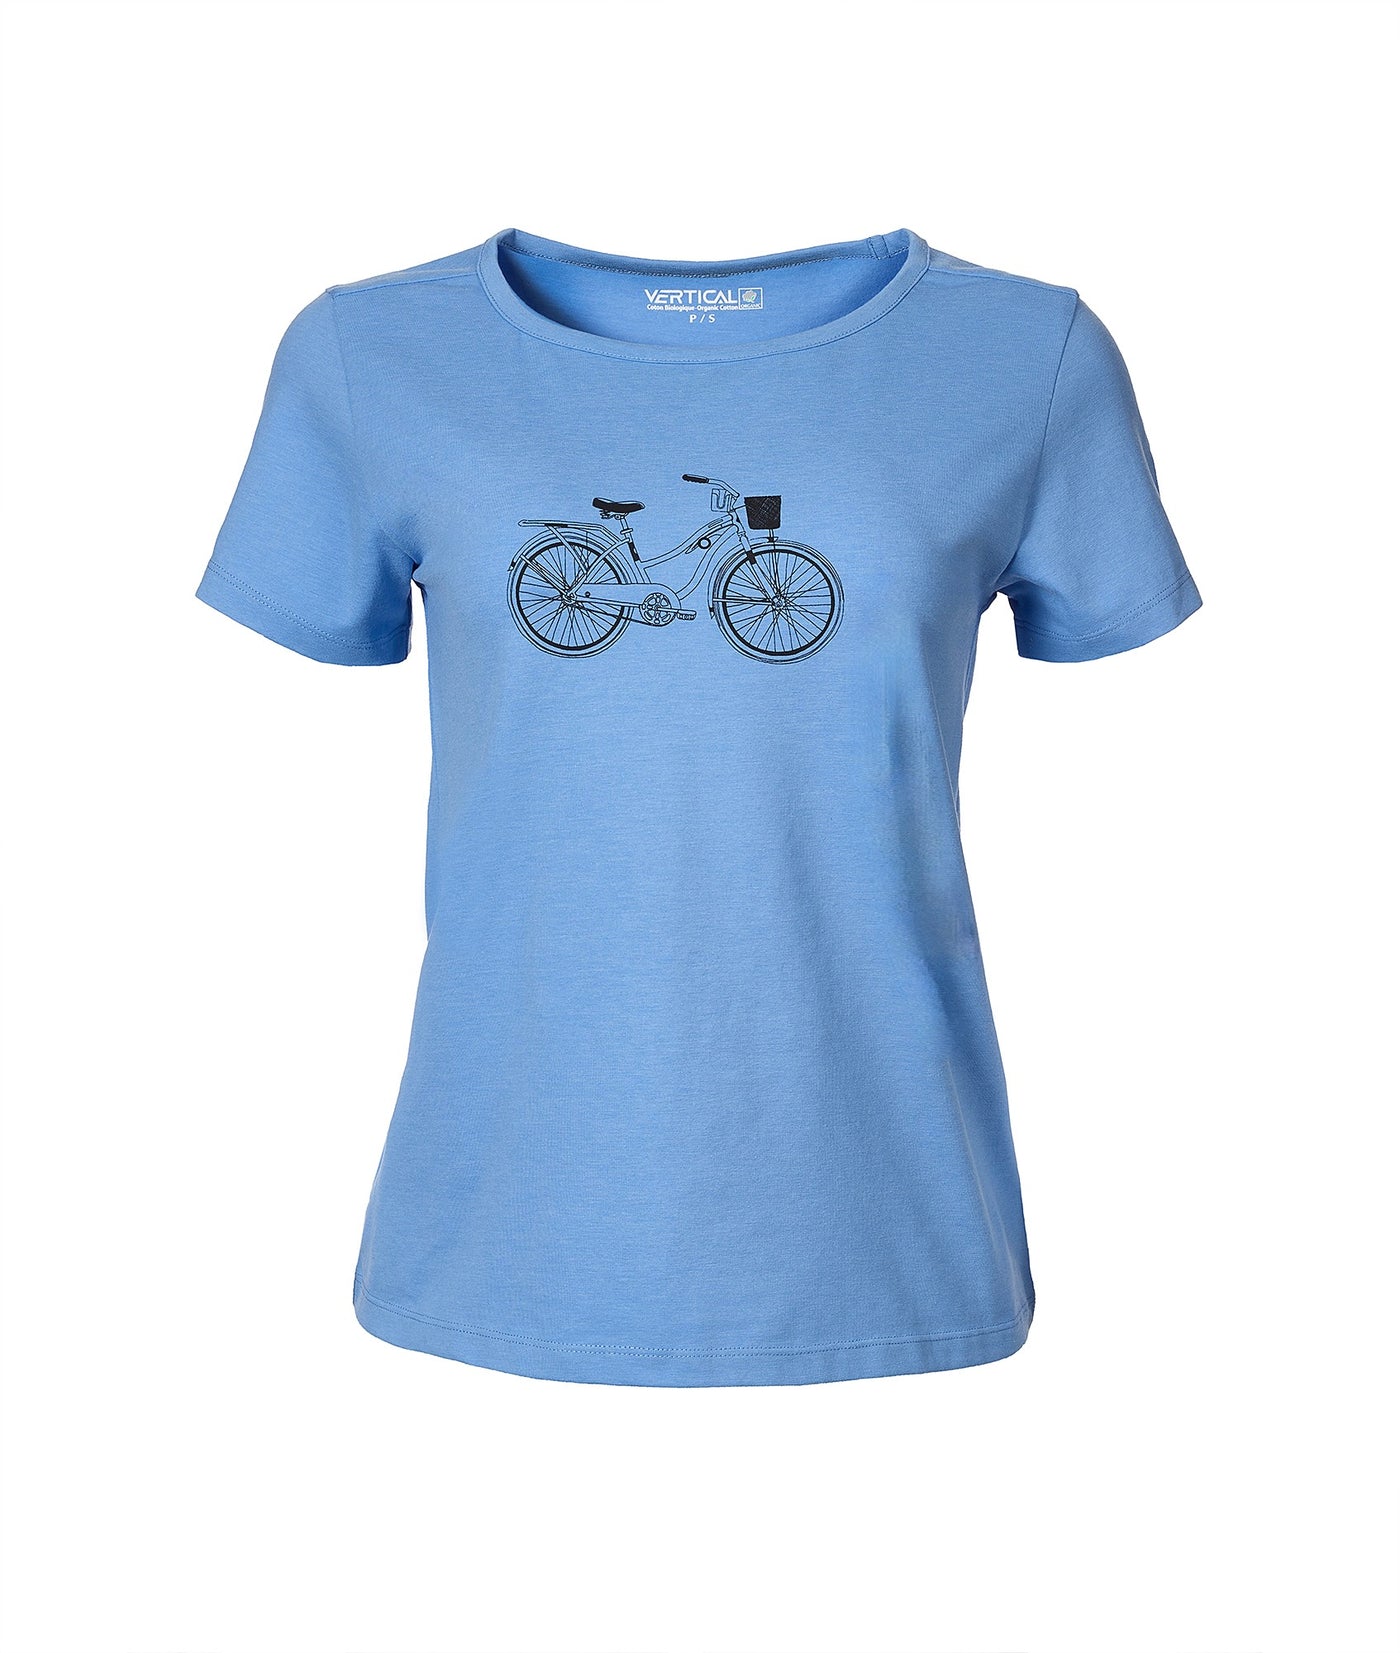 T-Shirt Vélo Vintage - Femme - 60% de rabais